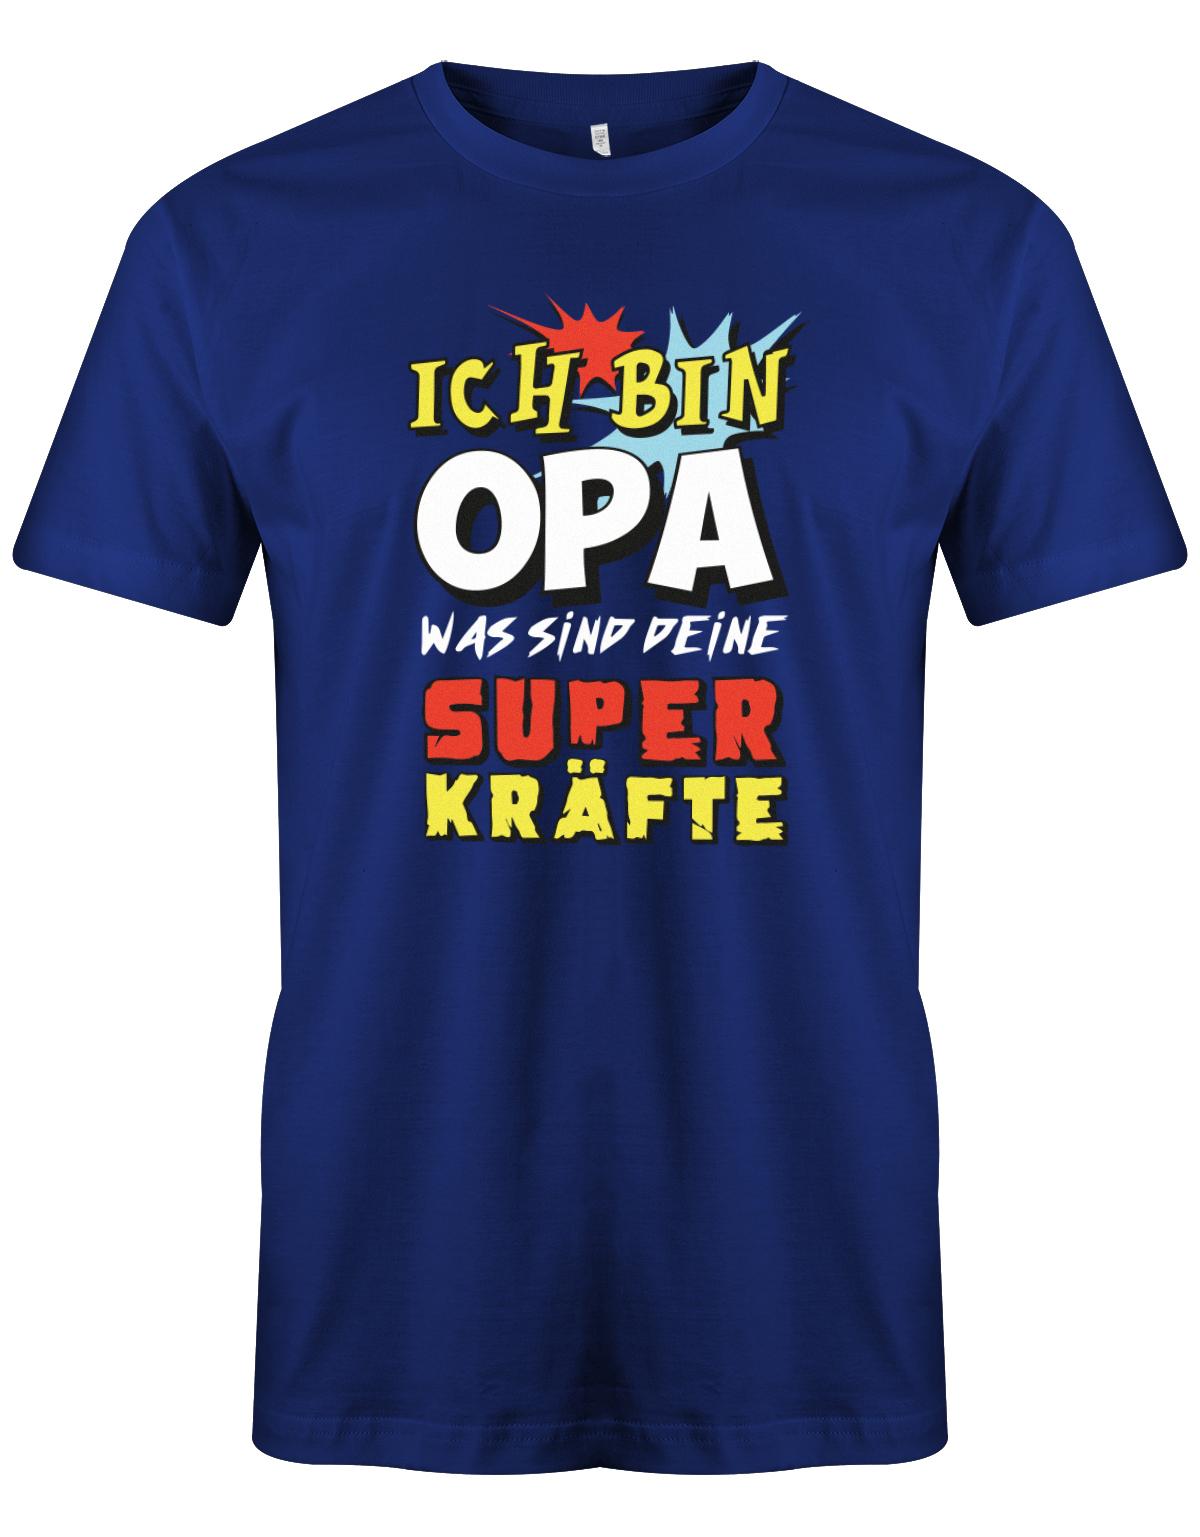 Opa T-Shirt – Ich bin Opa was sind deine Superkräfte Royalblau